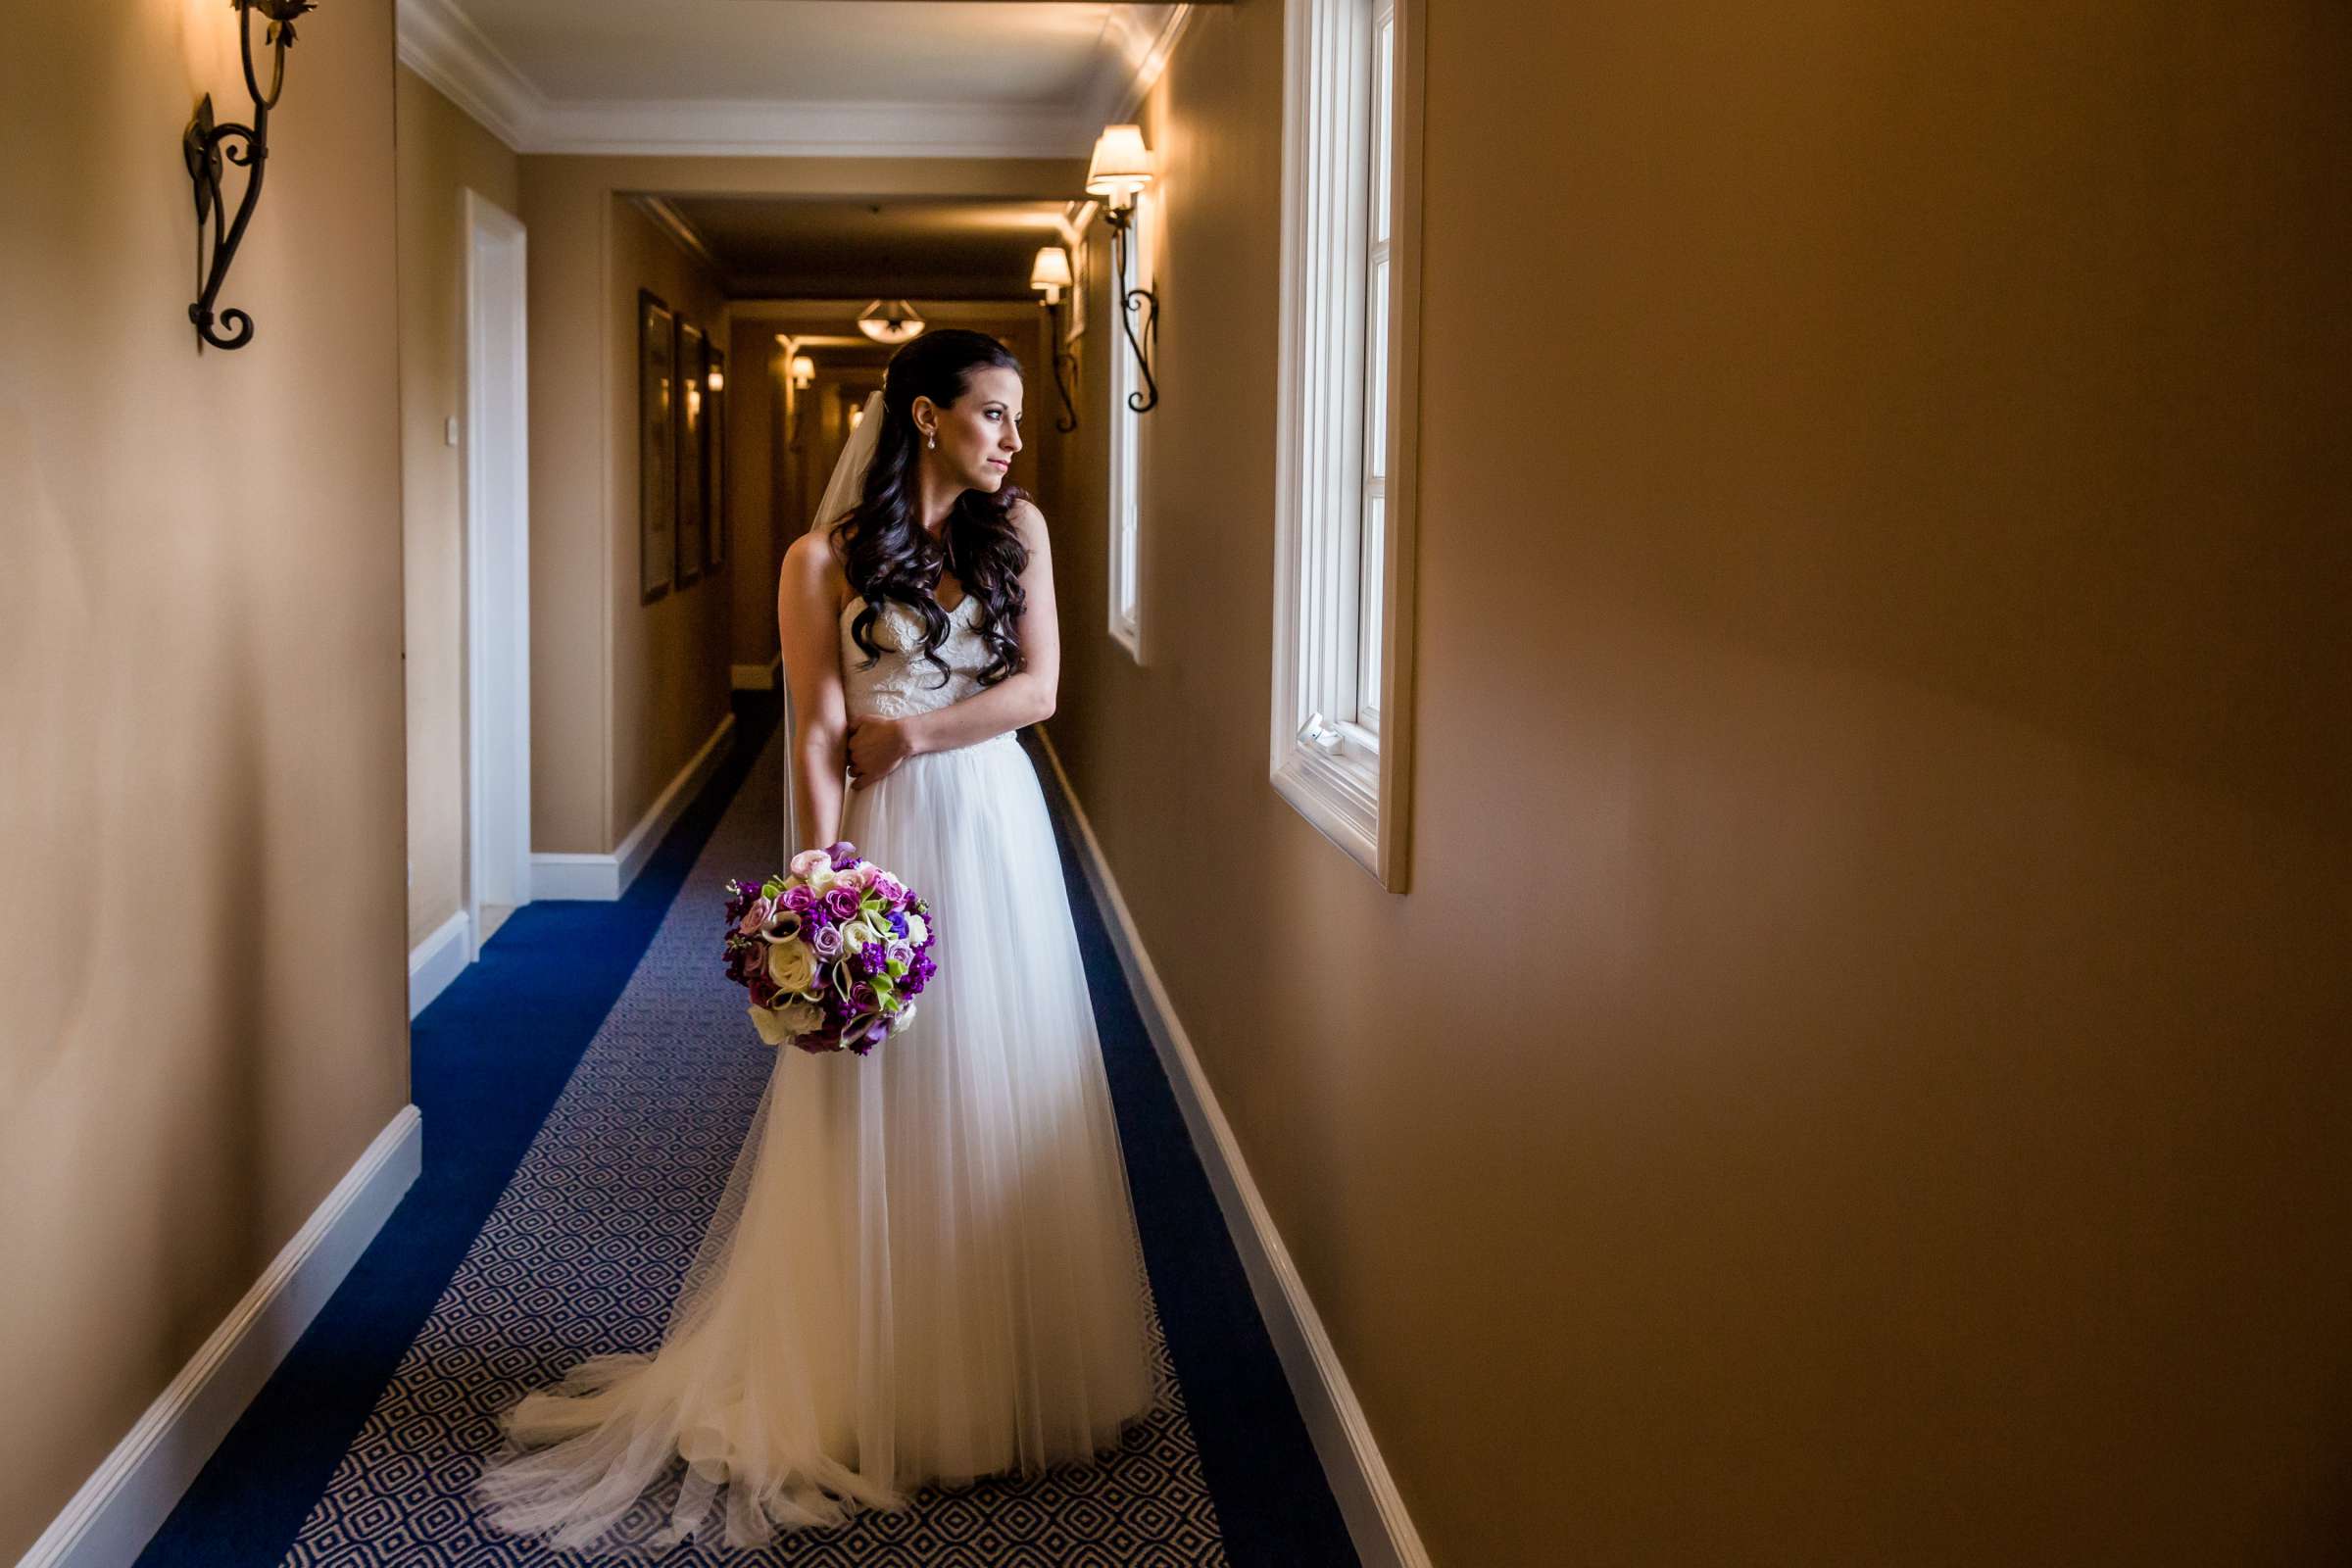 Park Hyatt Aviara Wedding, Jena and Keaton Wedding Photo #9 by True Photography